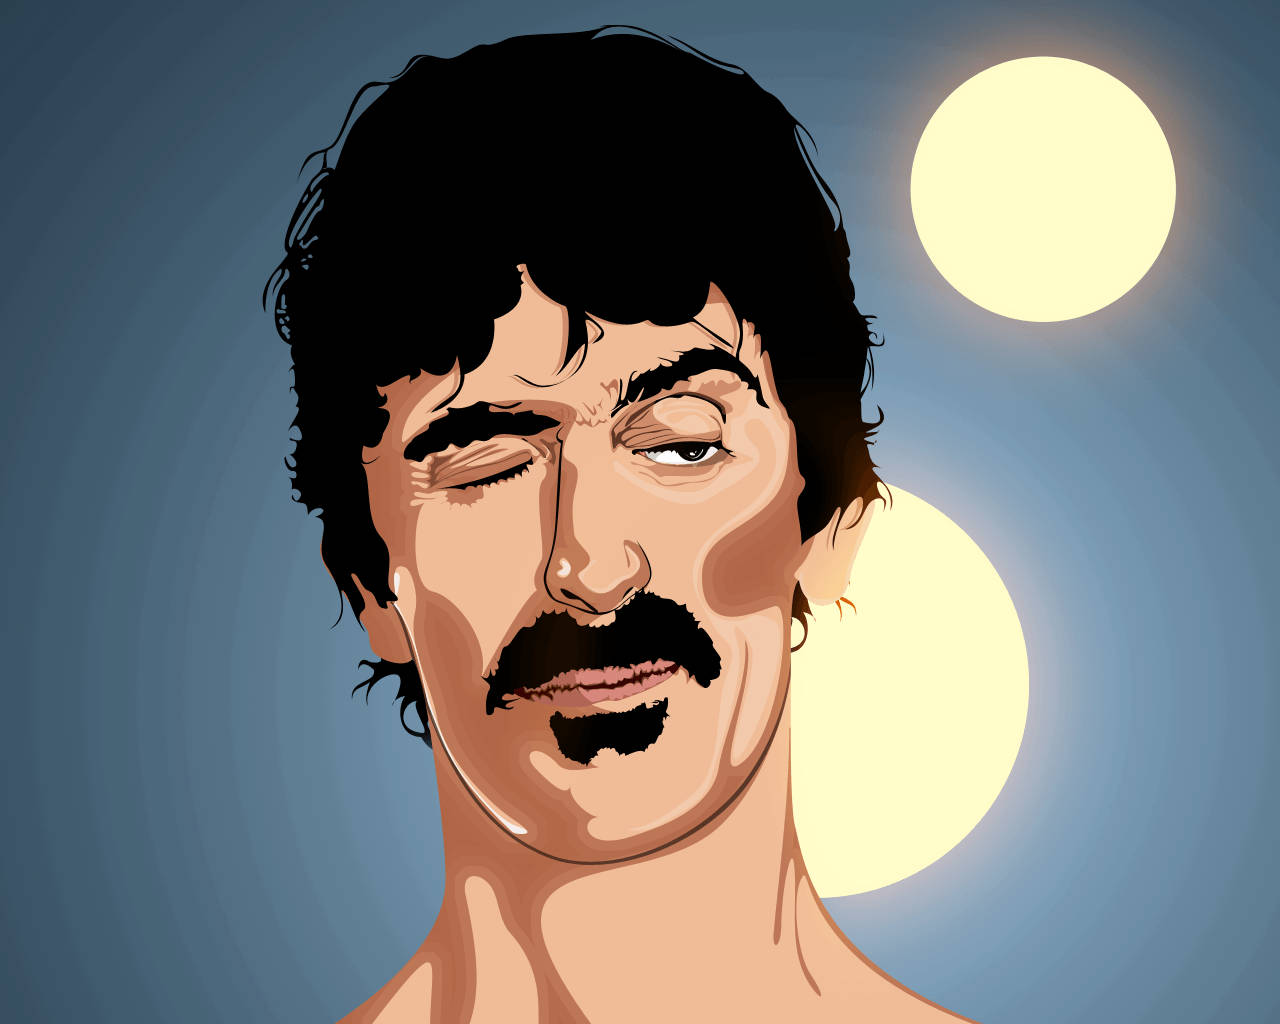 Frank Zappa Wink Art Wallpaper